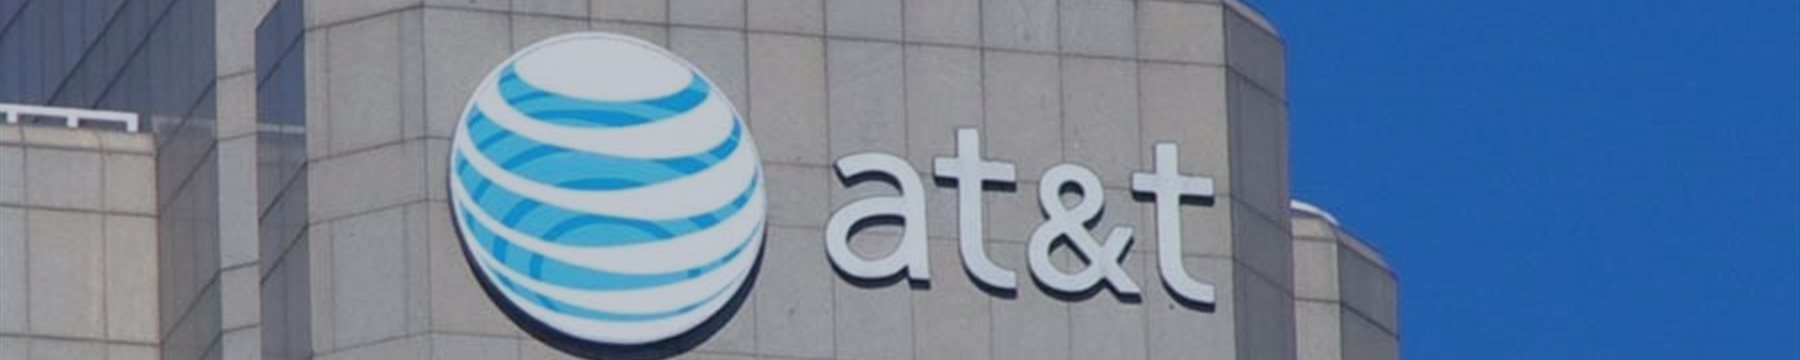 AT&T – акции идут вниз, но эксперты не спешат с выводами